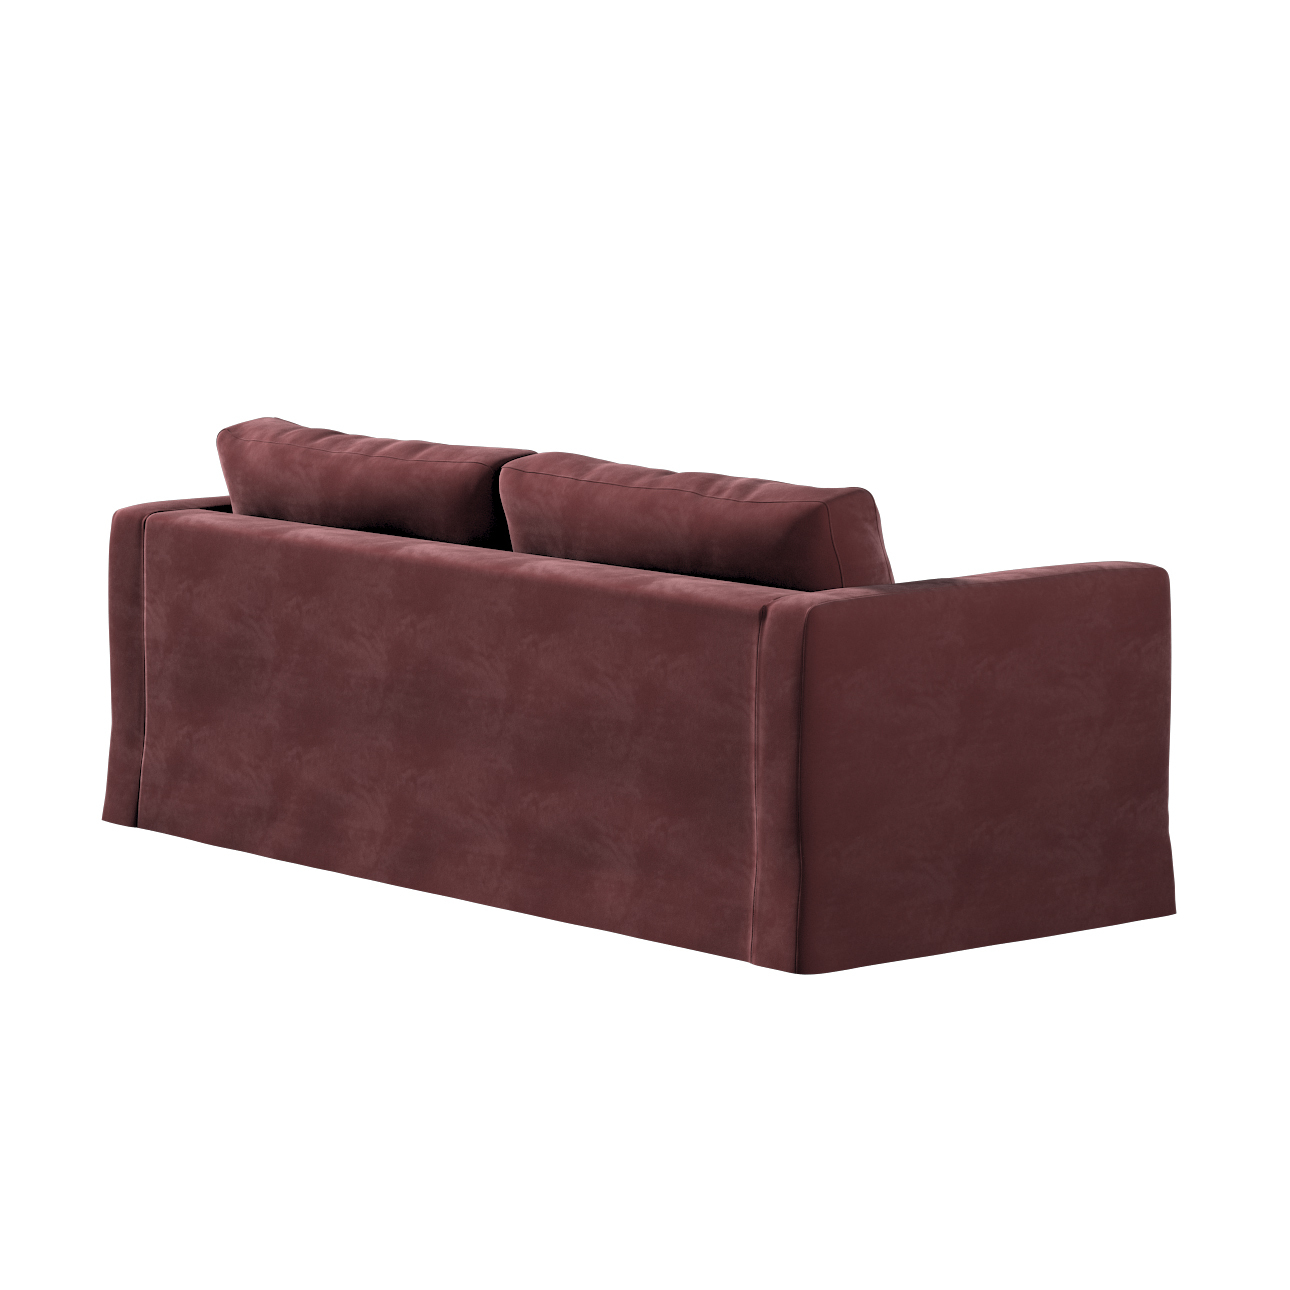 Bezug für Karlstad 3-Sitzer Sofa nicht ausklappbar, lang, bordeaux, Bezug f günstig online kaufen